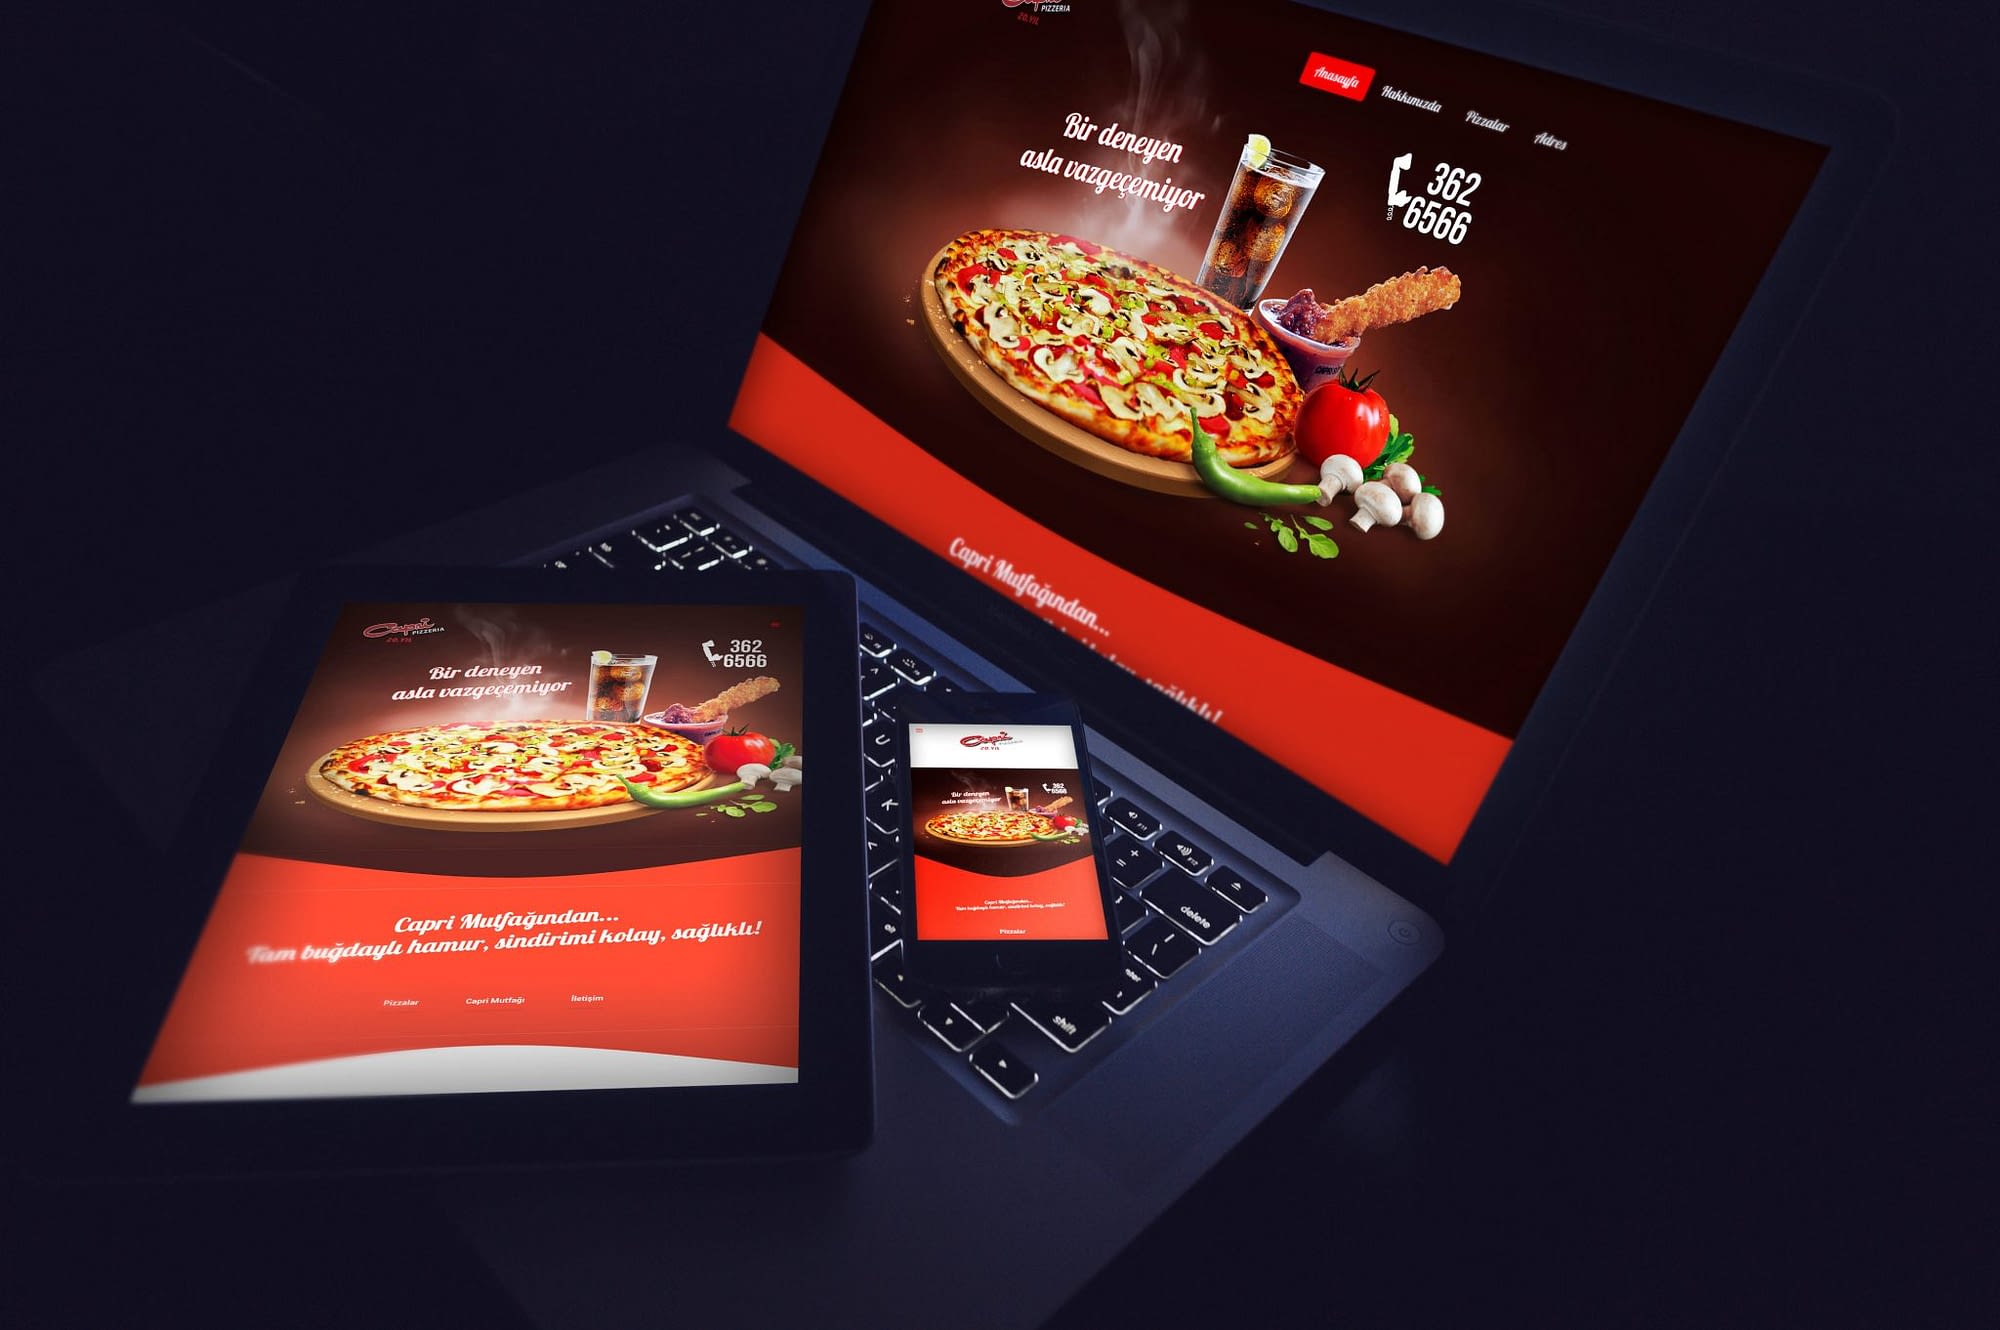 capri-pizza-web-site